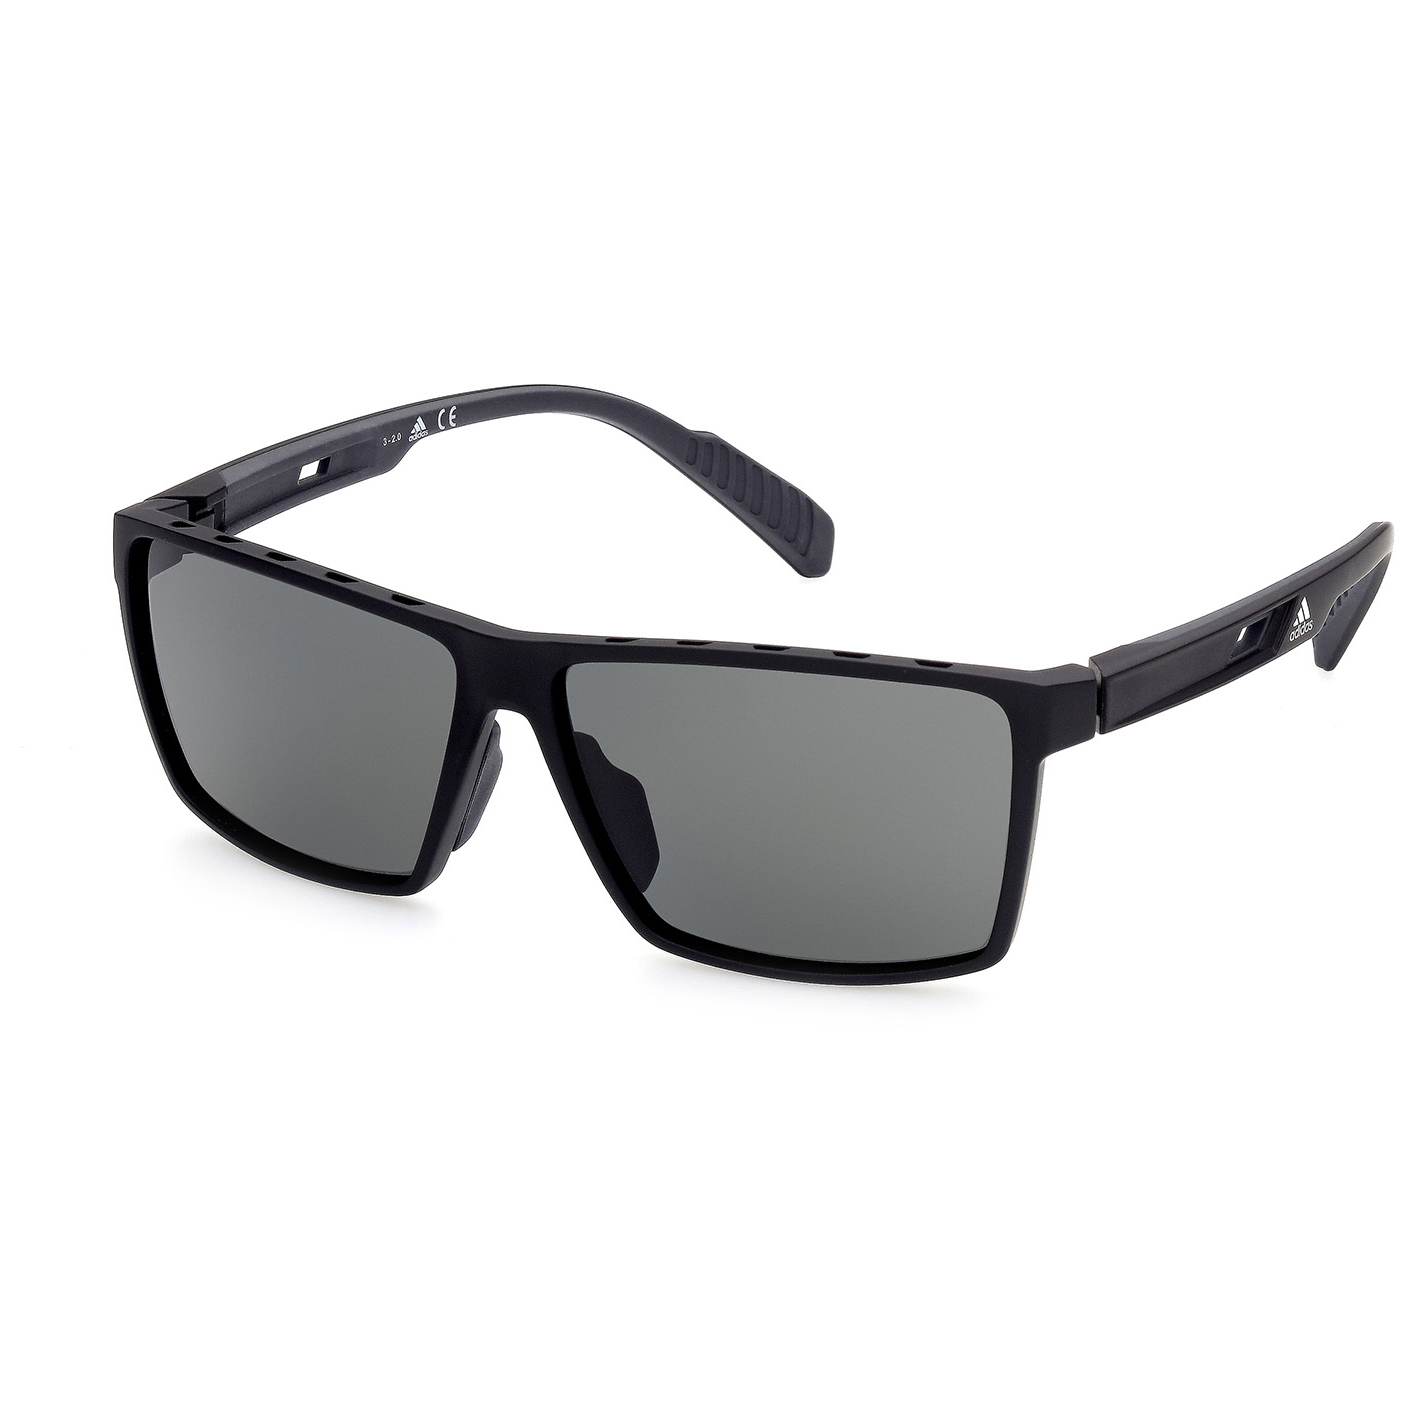 Солнцезащитные очки Adidas SP0034 Polarized Cat 3, матовый черный очки солнцезащитные stylemark polarized l1475c